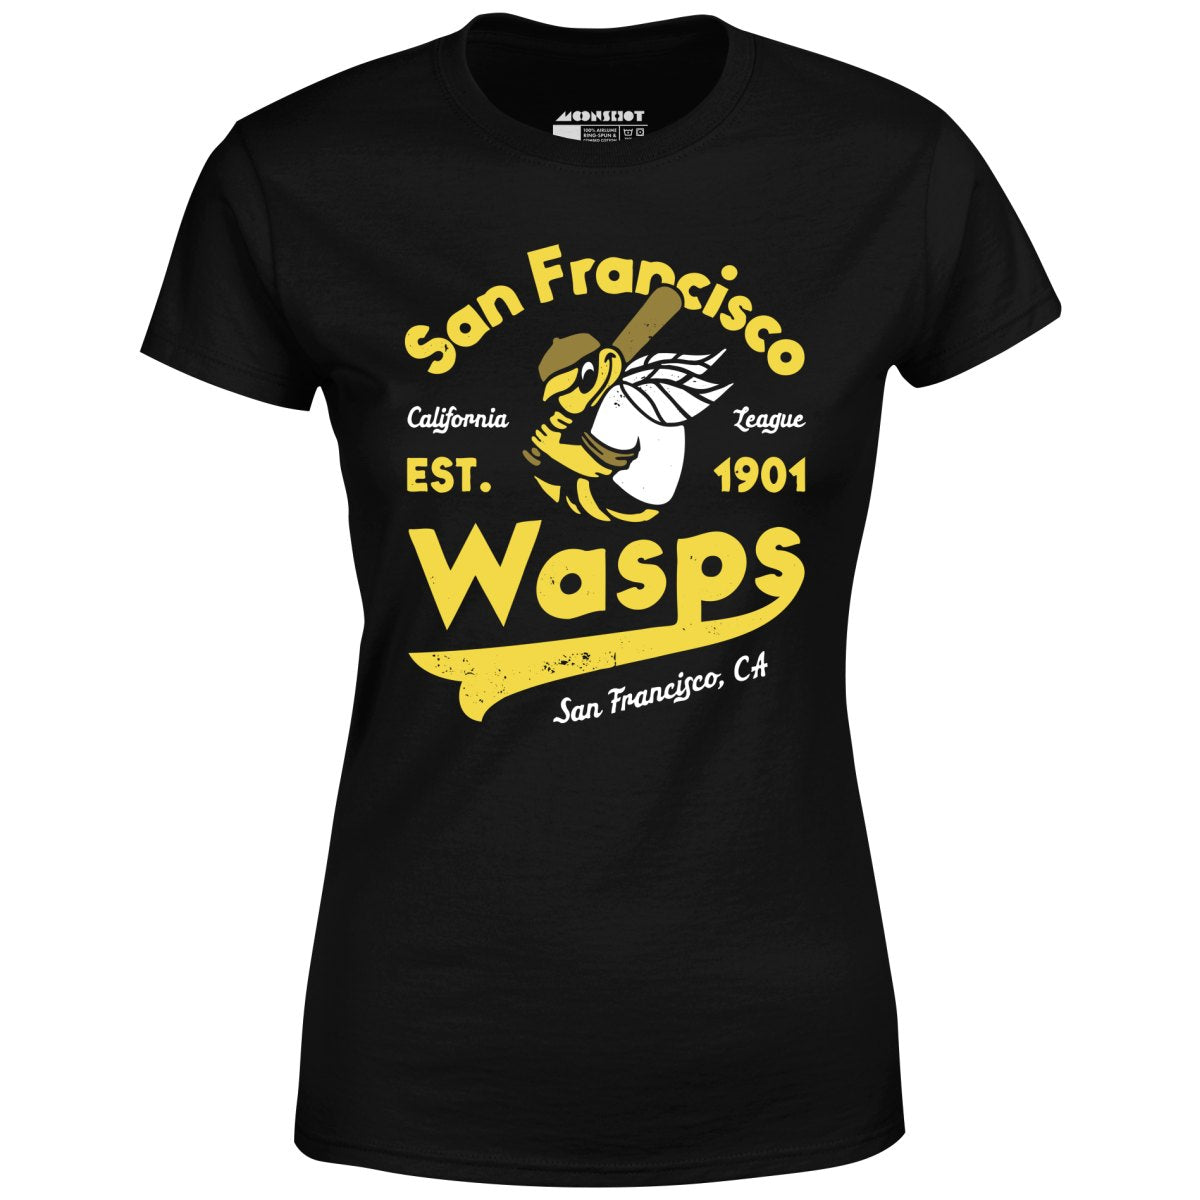 San Francisco Wasps - California - Vintage Defunct Baseball Teams - Women's T-Shirt